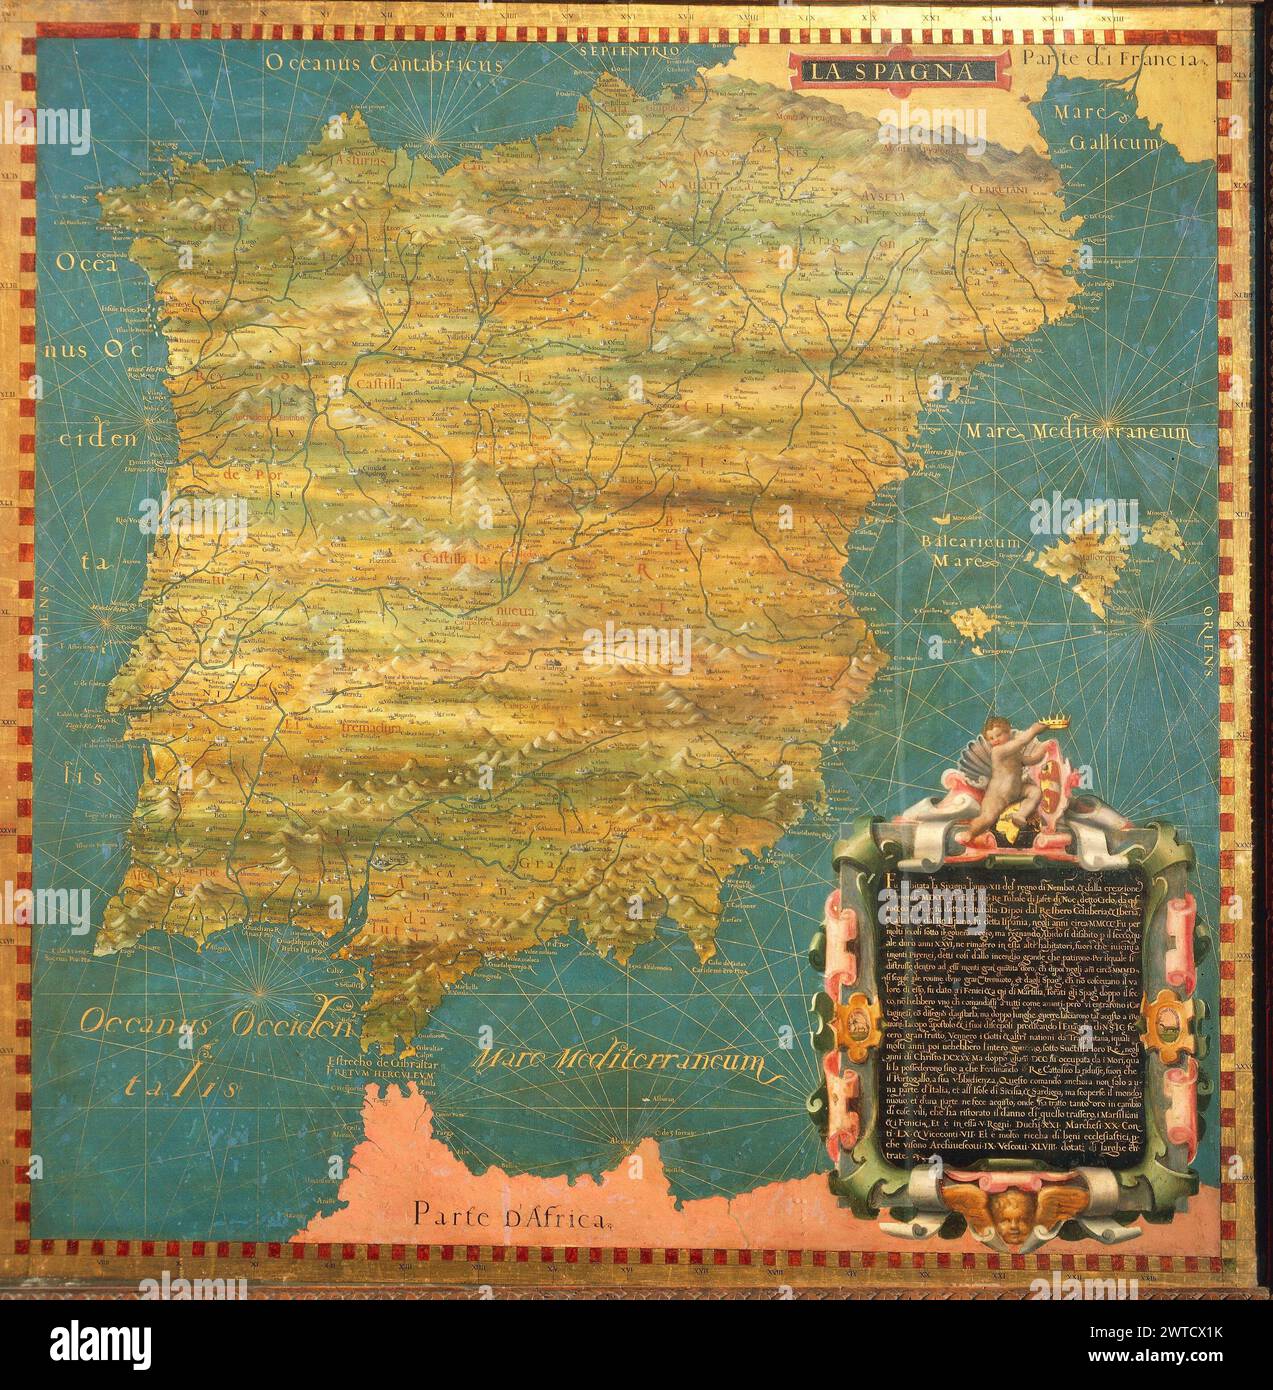 Carte de la péninsule ibérique - Hall des cartes géographiques , Florence Palazzo Vecchio, 1500 cartes du monde antique Banque D'Images